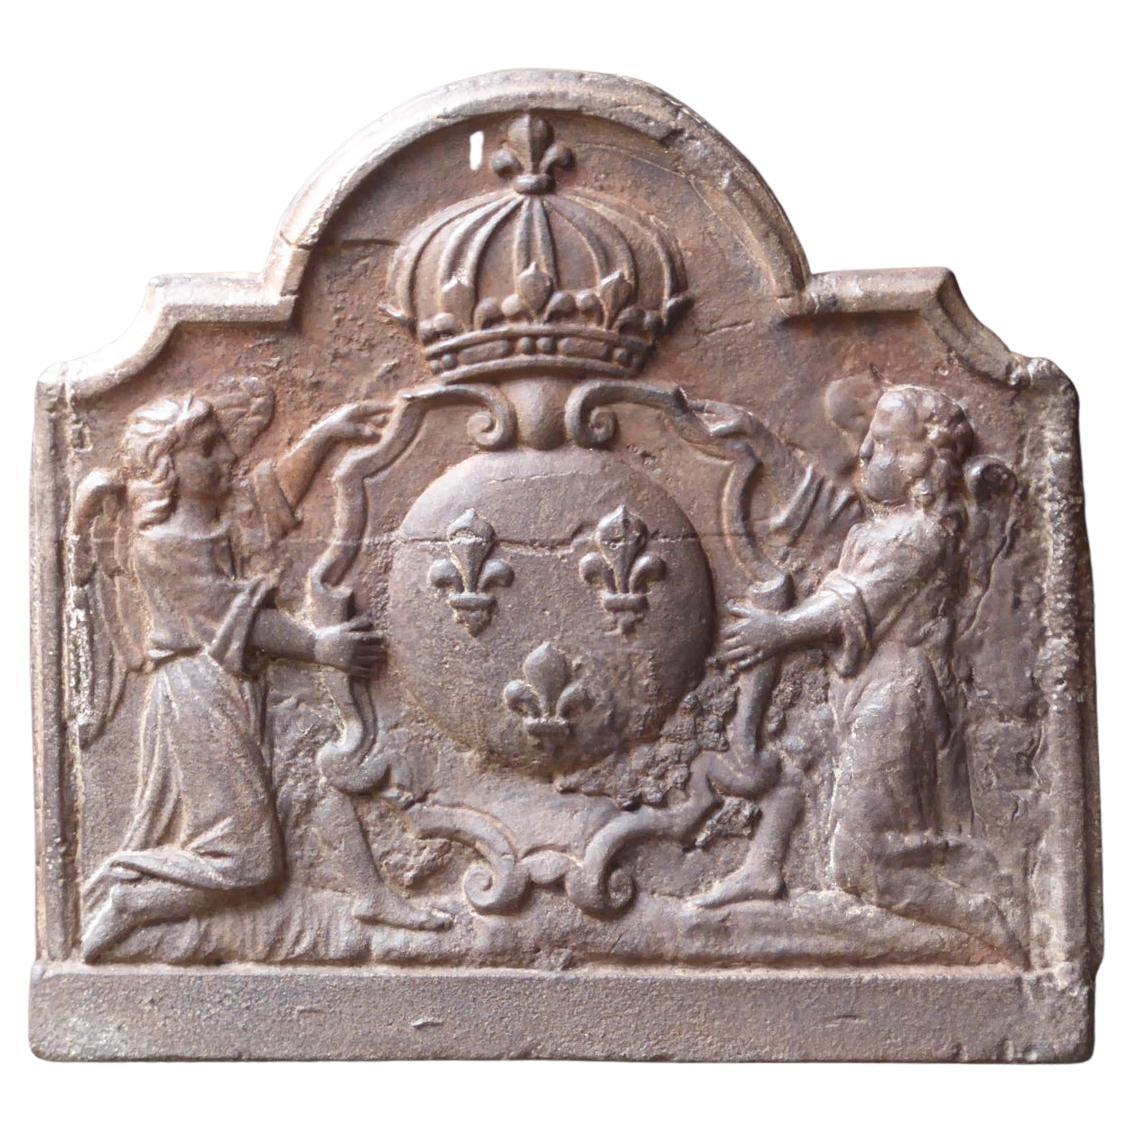 Plaque de cheminée française ancienne avec armoiries de France, 17e-18e siècle